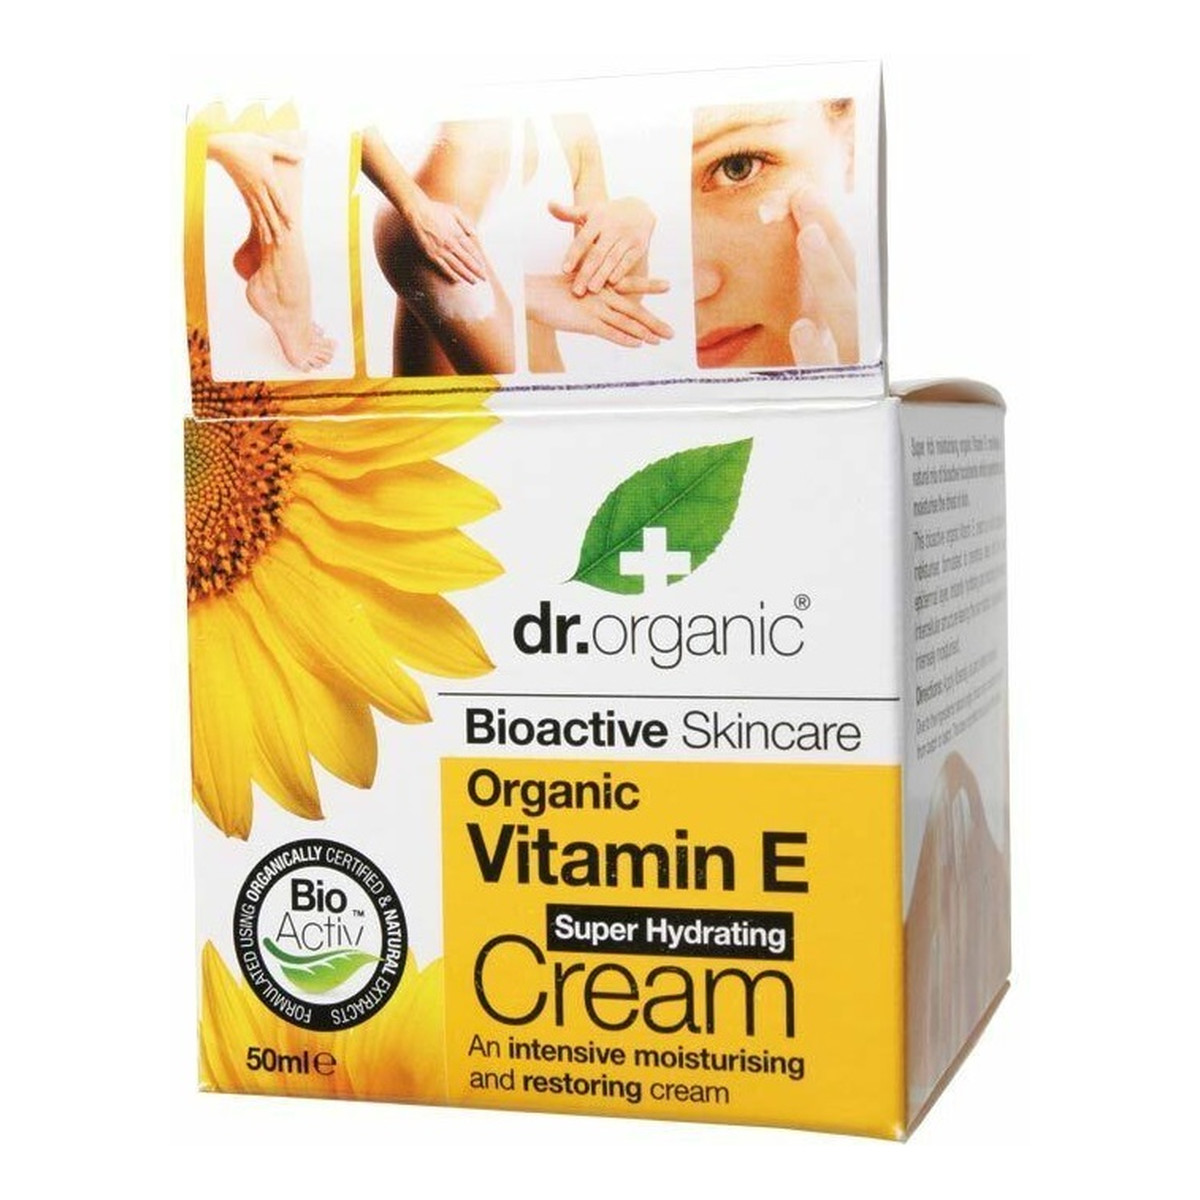 Dr.Organic Vitamin E Super Hydrating Cream intensywnie nawilżająco-regenerujący Krem do skóry normalnej i suchej 50ml